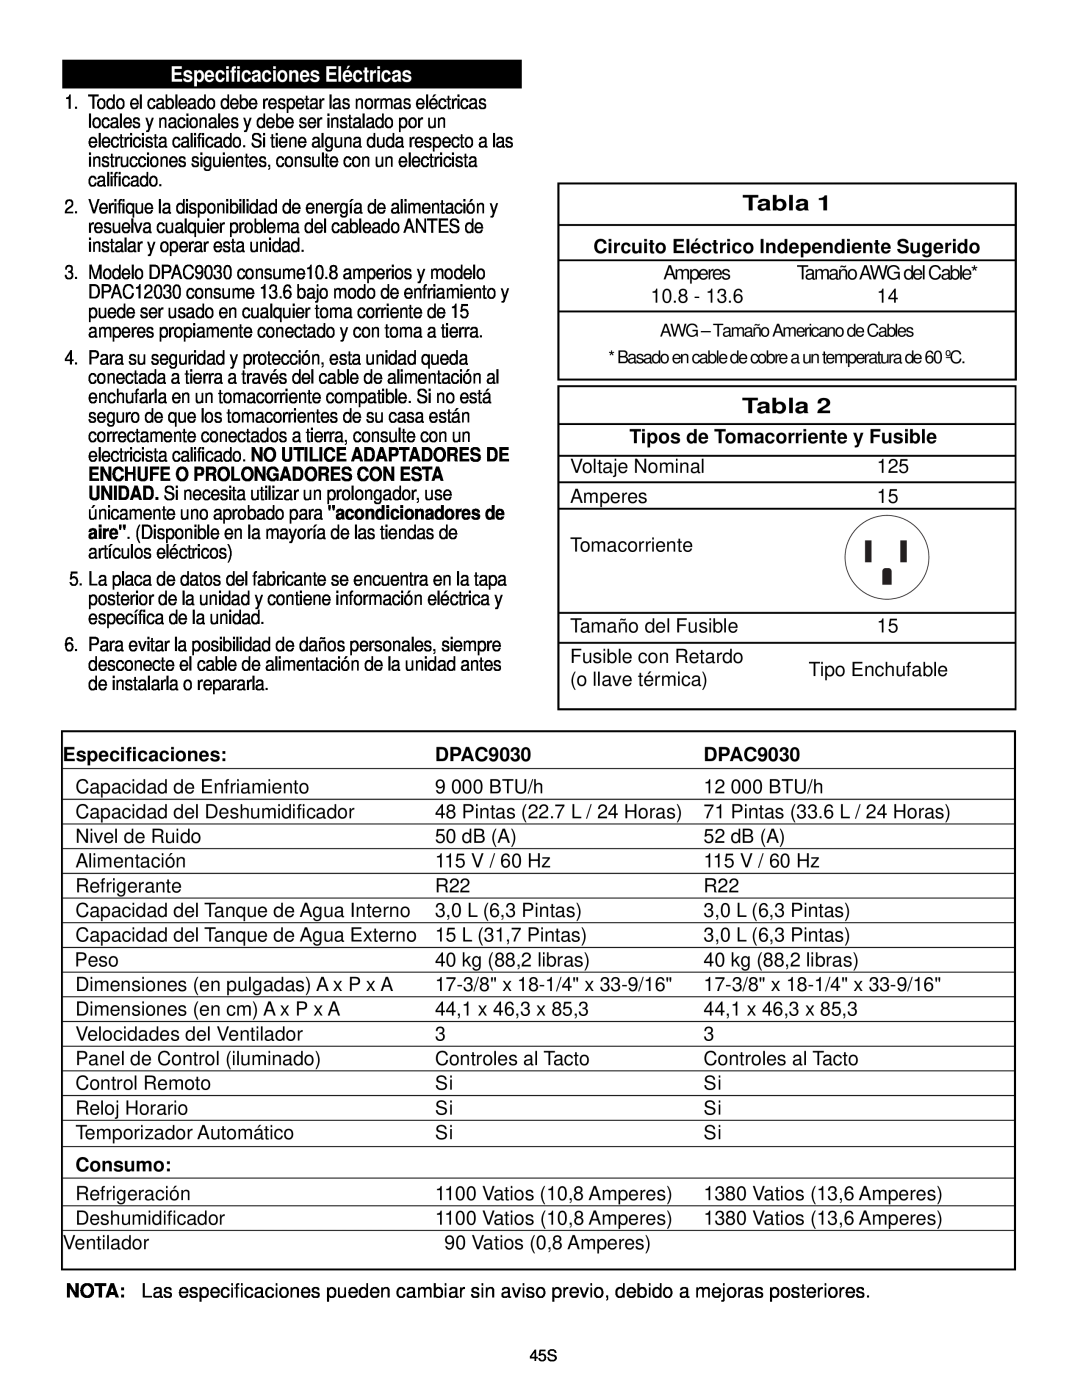 Danby DPAC9030 Especificaciones Eléctricas, Circuito Eléctrico Independiente Sugerido, Tipos de Tomacorriente y Fusible 